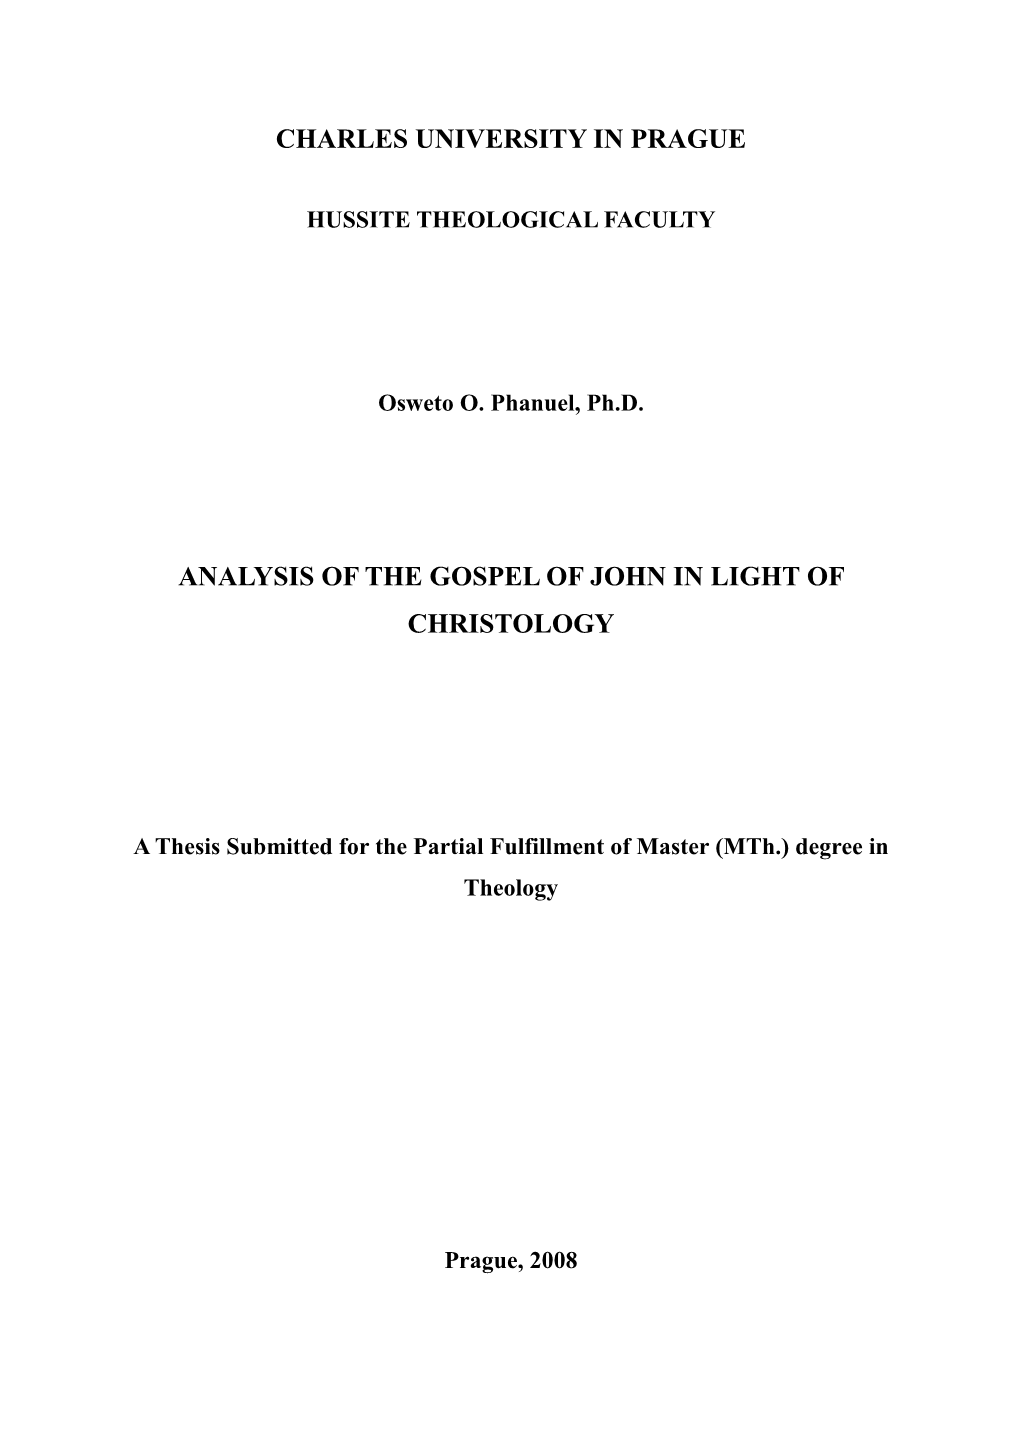 Analysis of the Gospel of John in Light of Christology